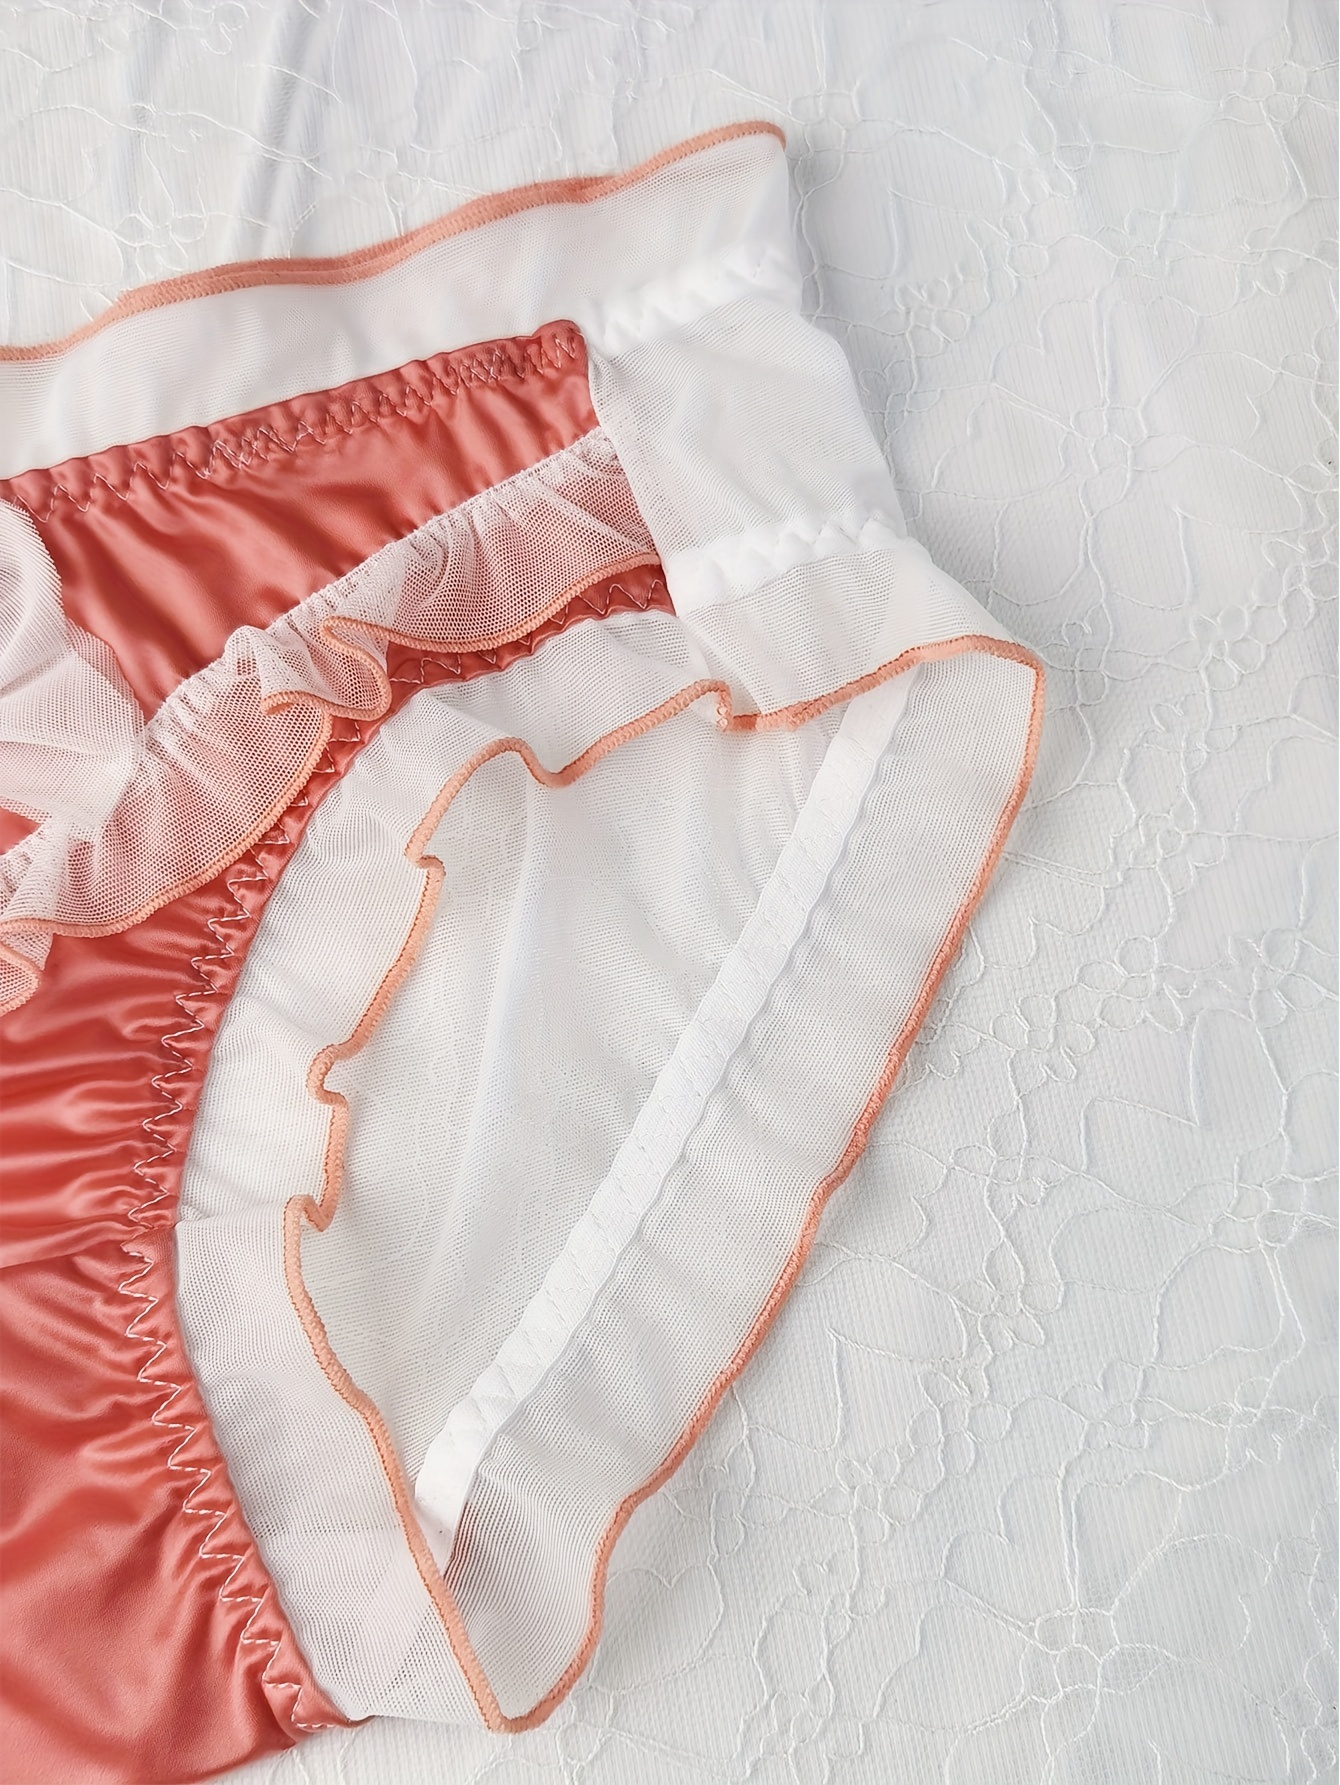 3pcs Lettuce Trim Briefs, Comfy & Breathable Stretchy Intimates Panties,  Women's Lingerie & Underwear